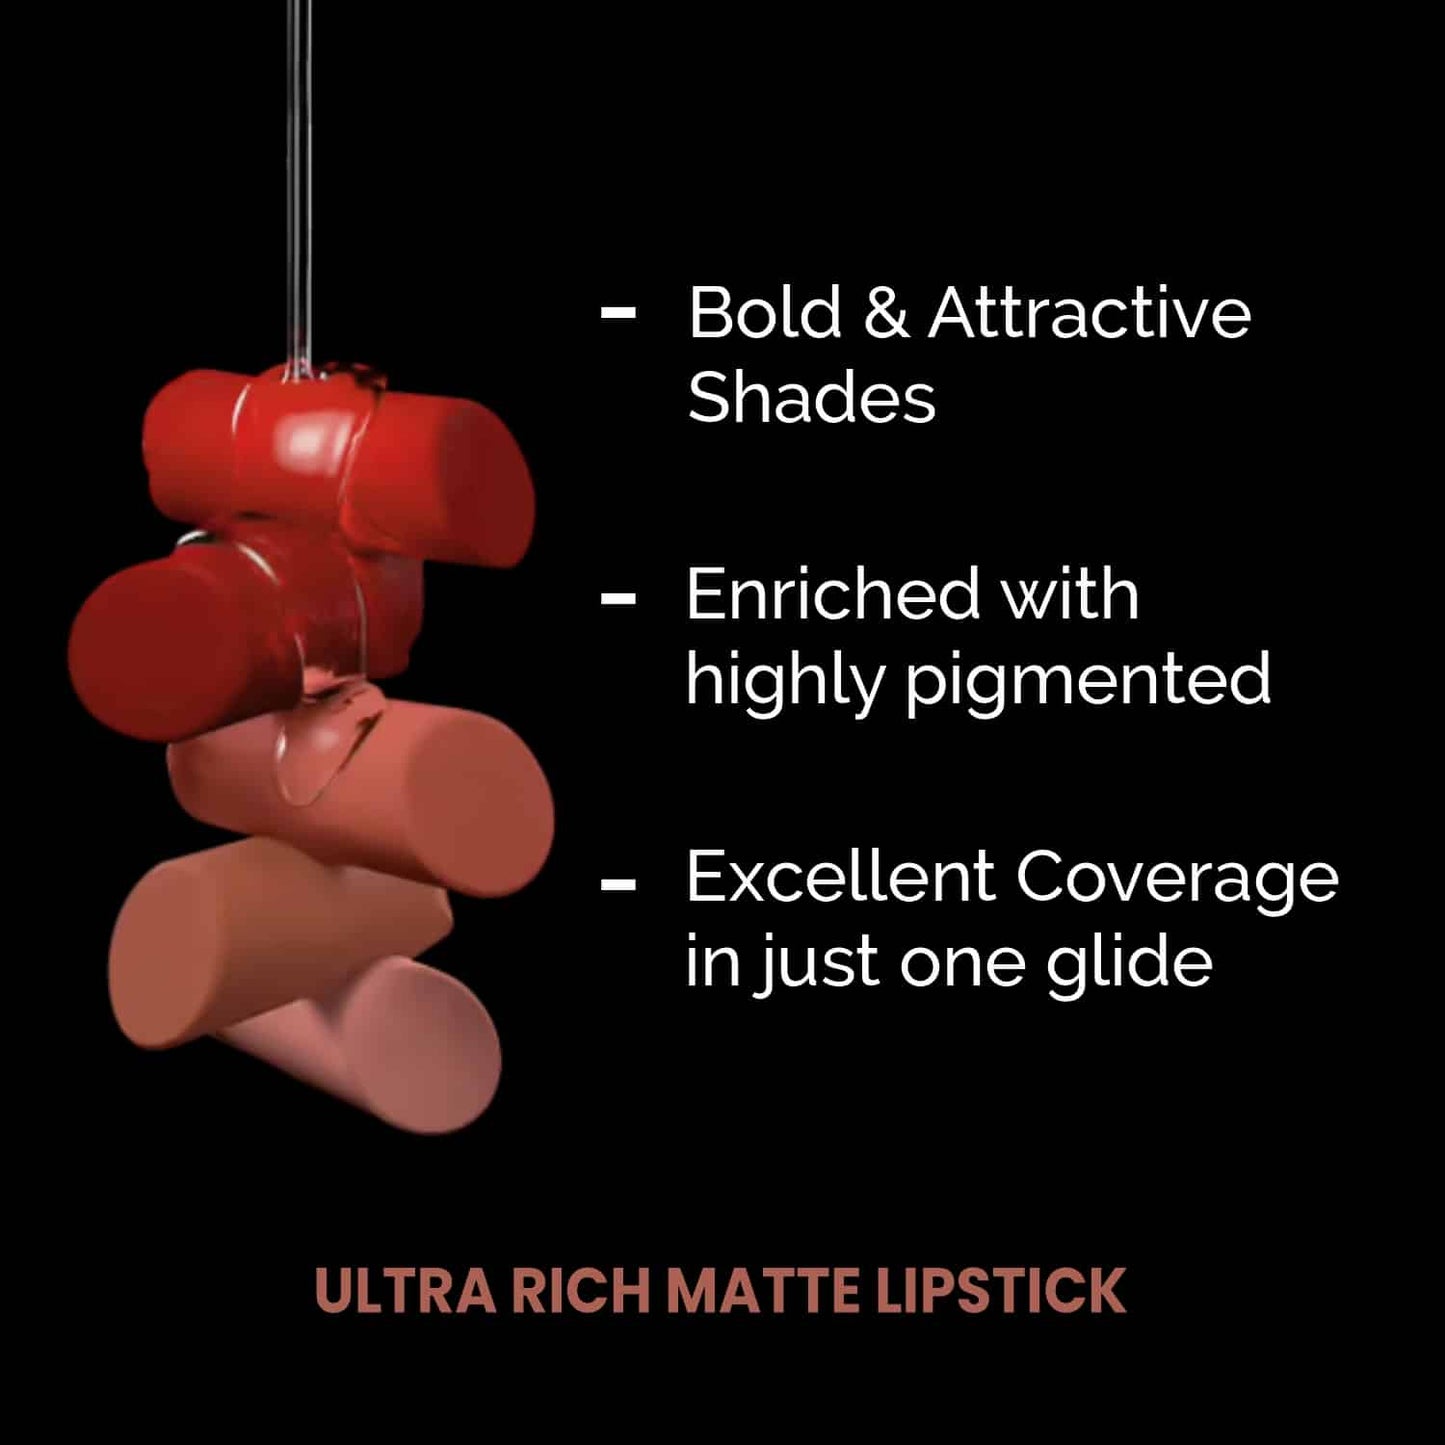 Ultra Rich Matte Lipstick - 322 So Pretty